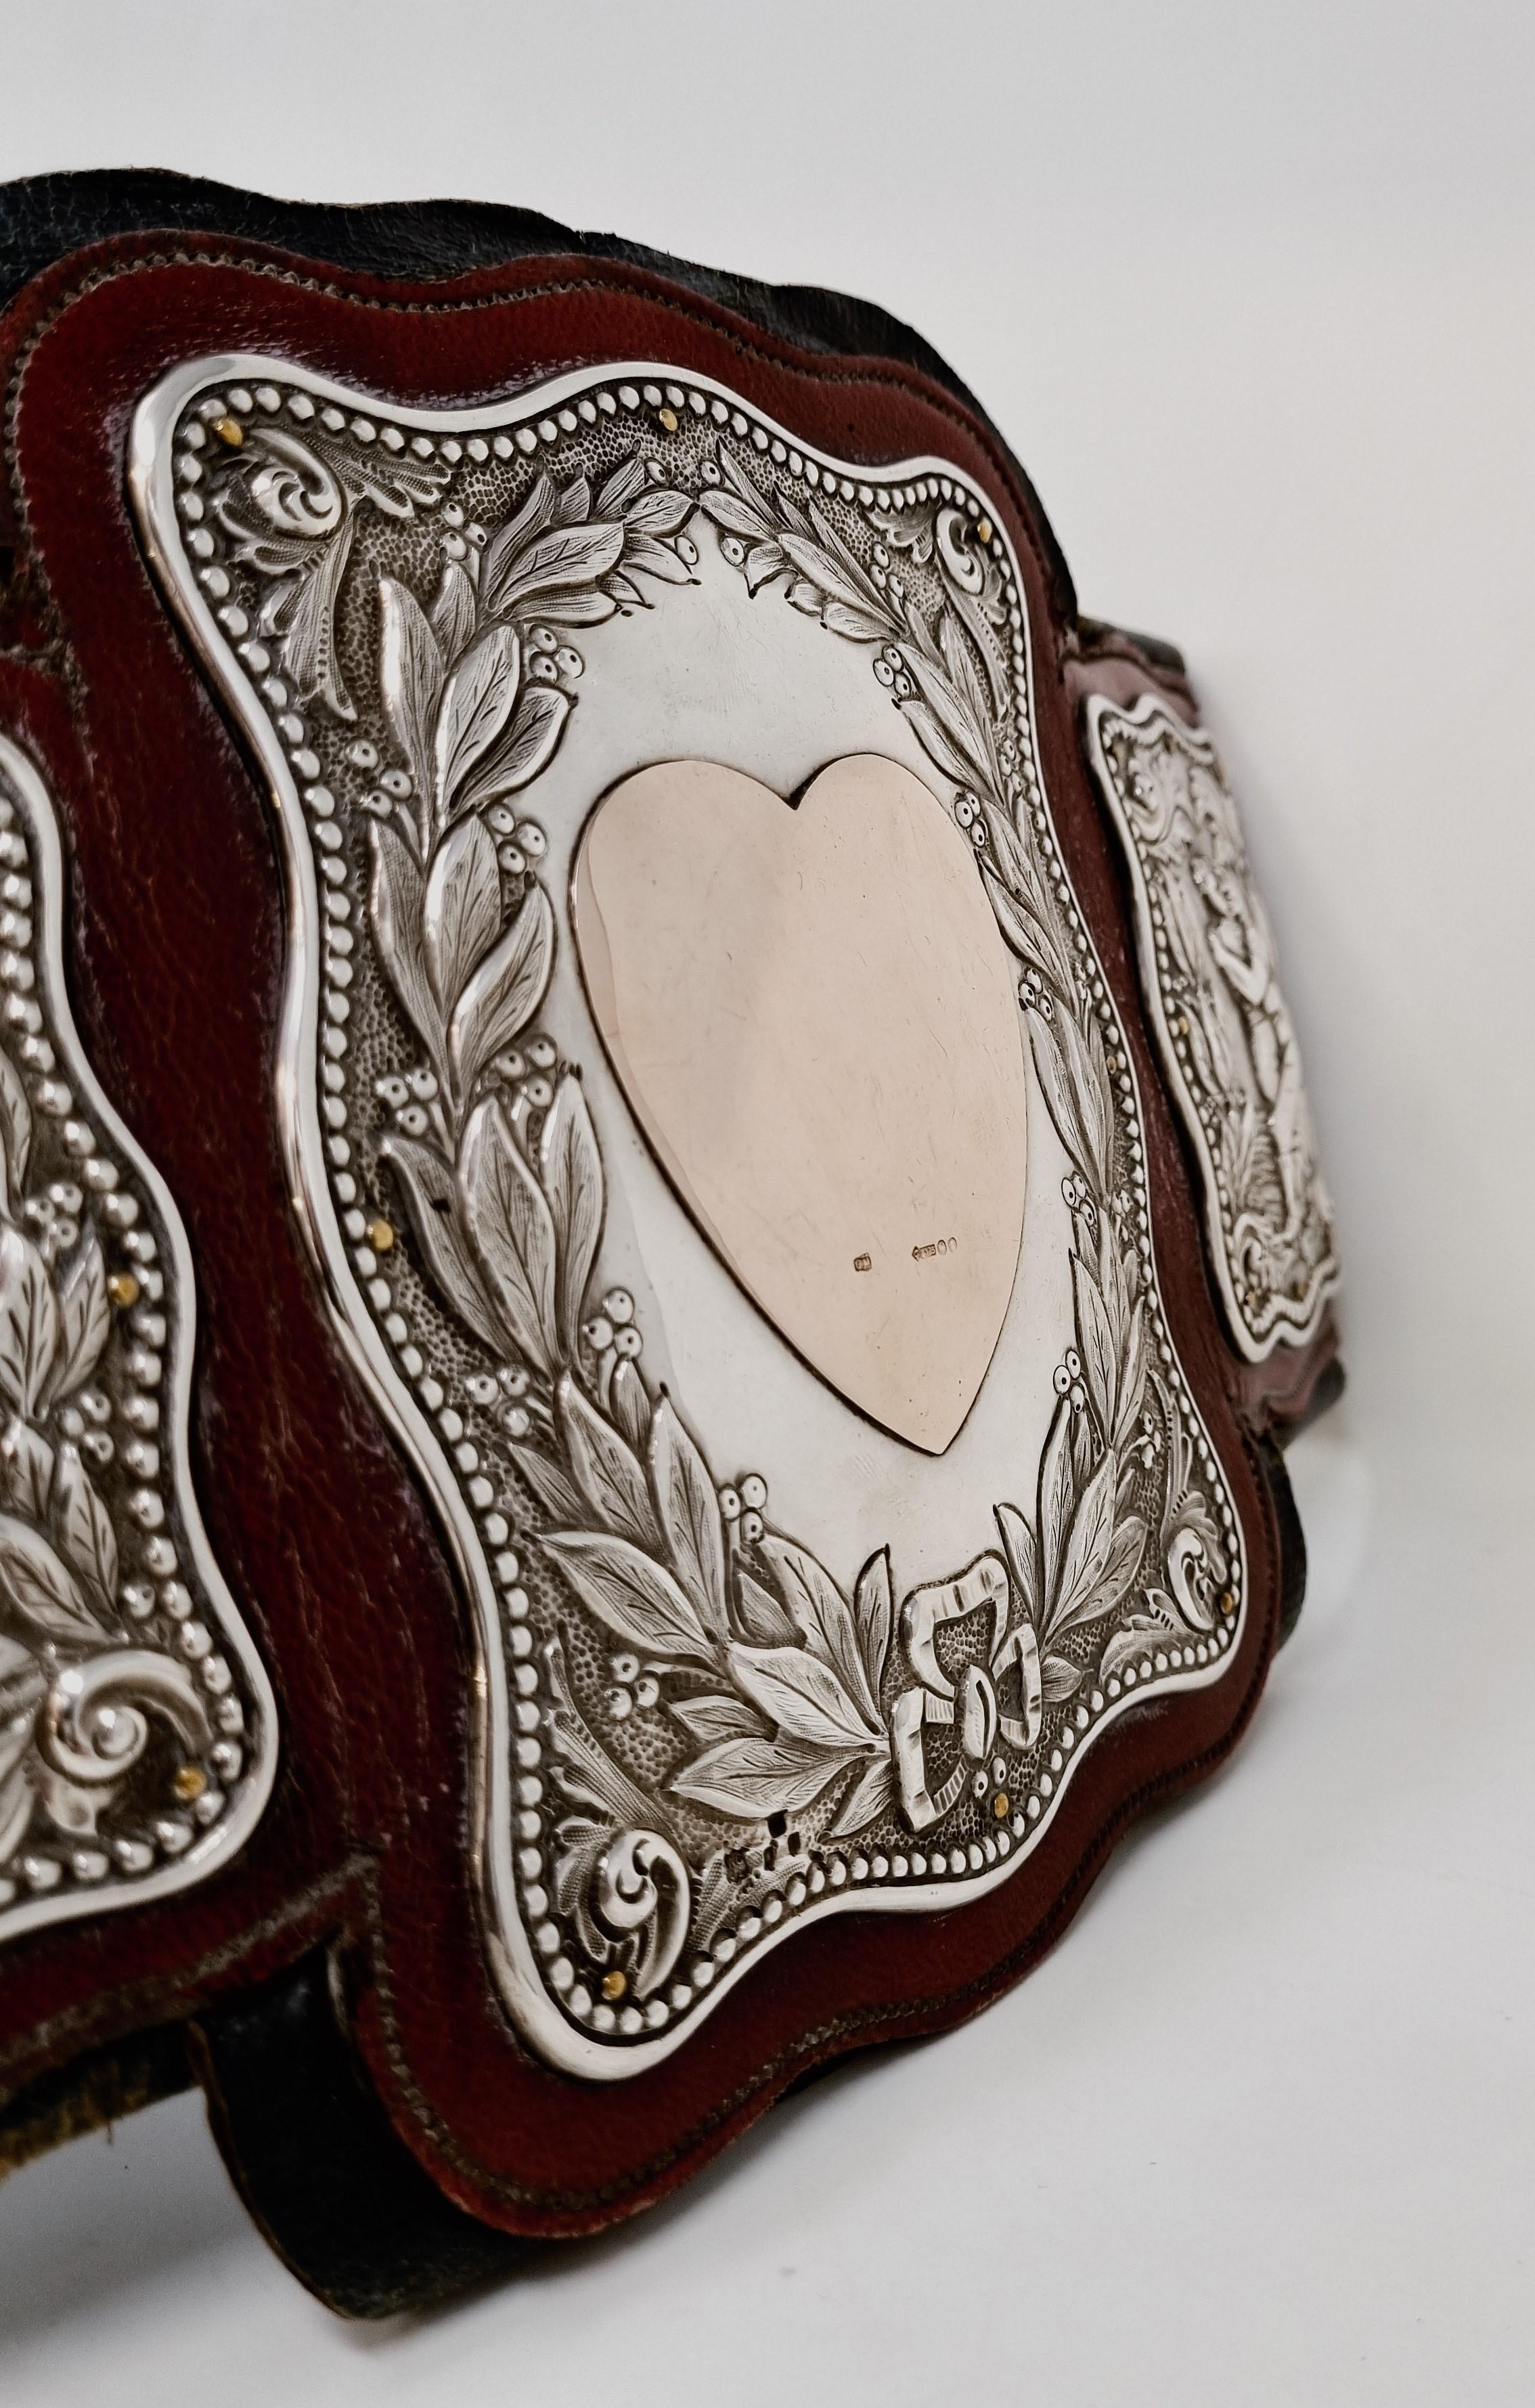 1898 Original Leather Gold and Silver Wrestling Champion Belt In Good Condition For Sale In Reggio Emilia, IT